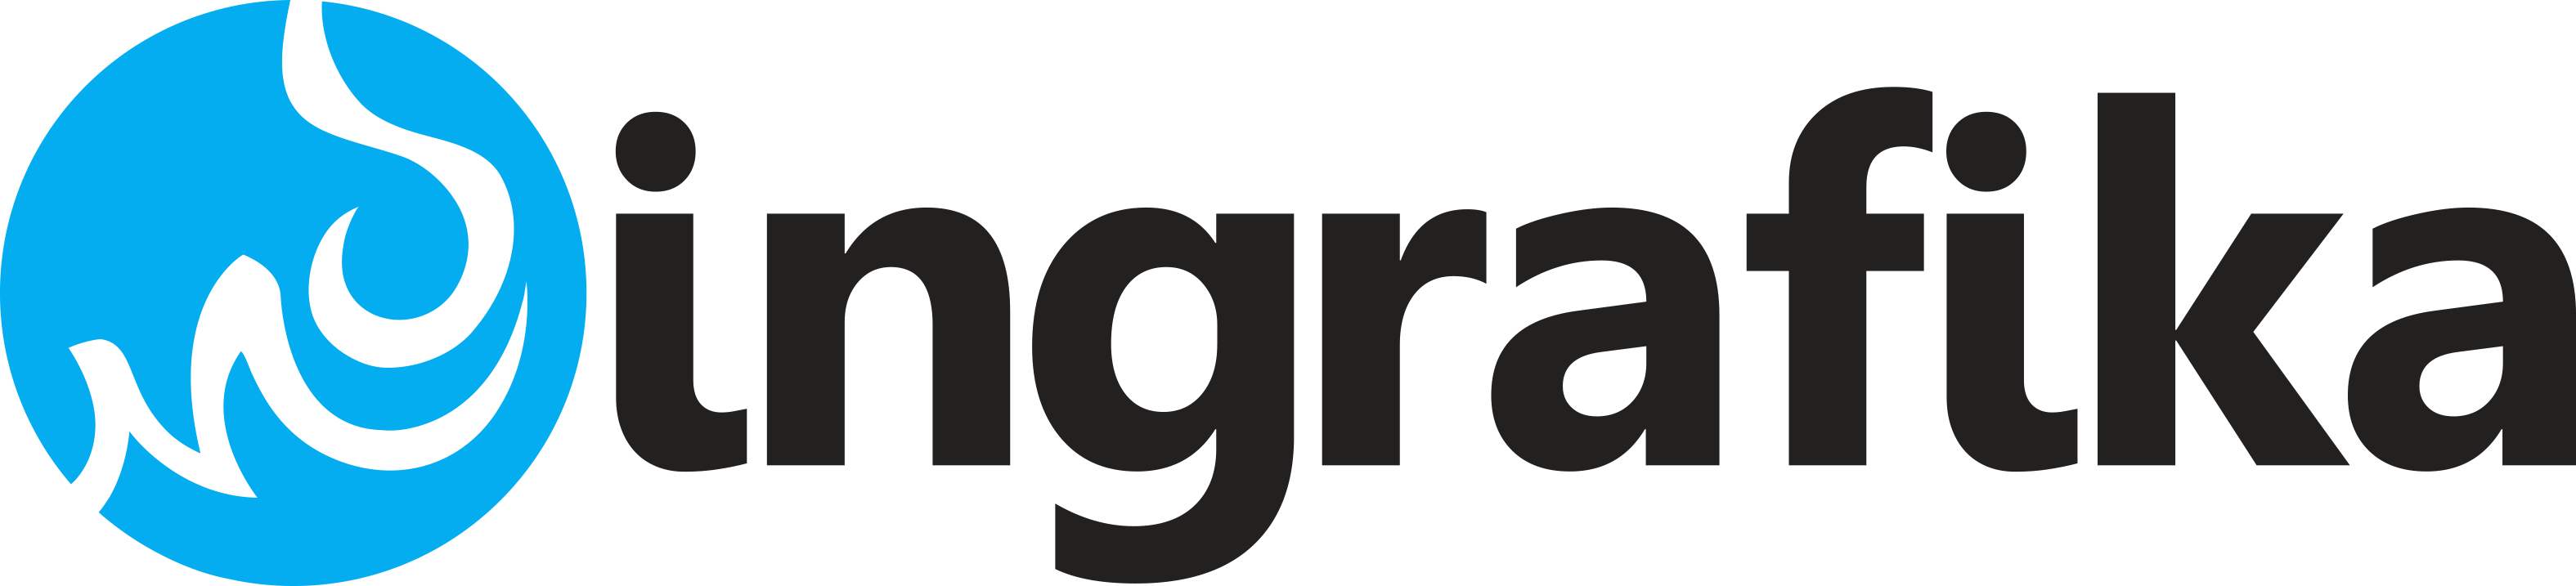 logo_ingrafika_shop